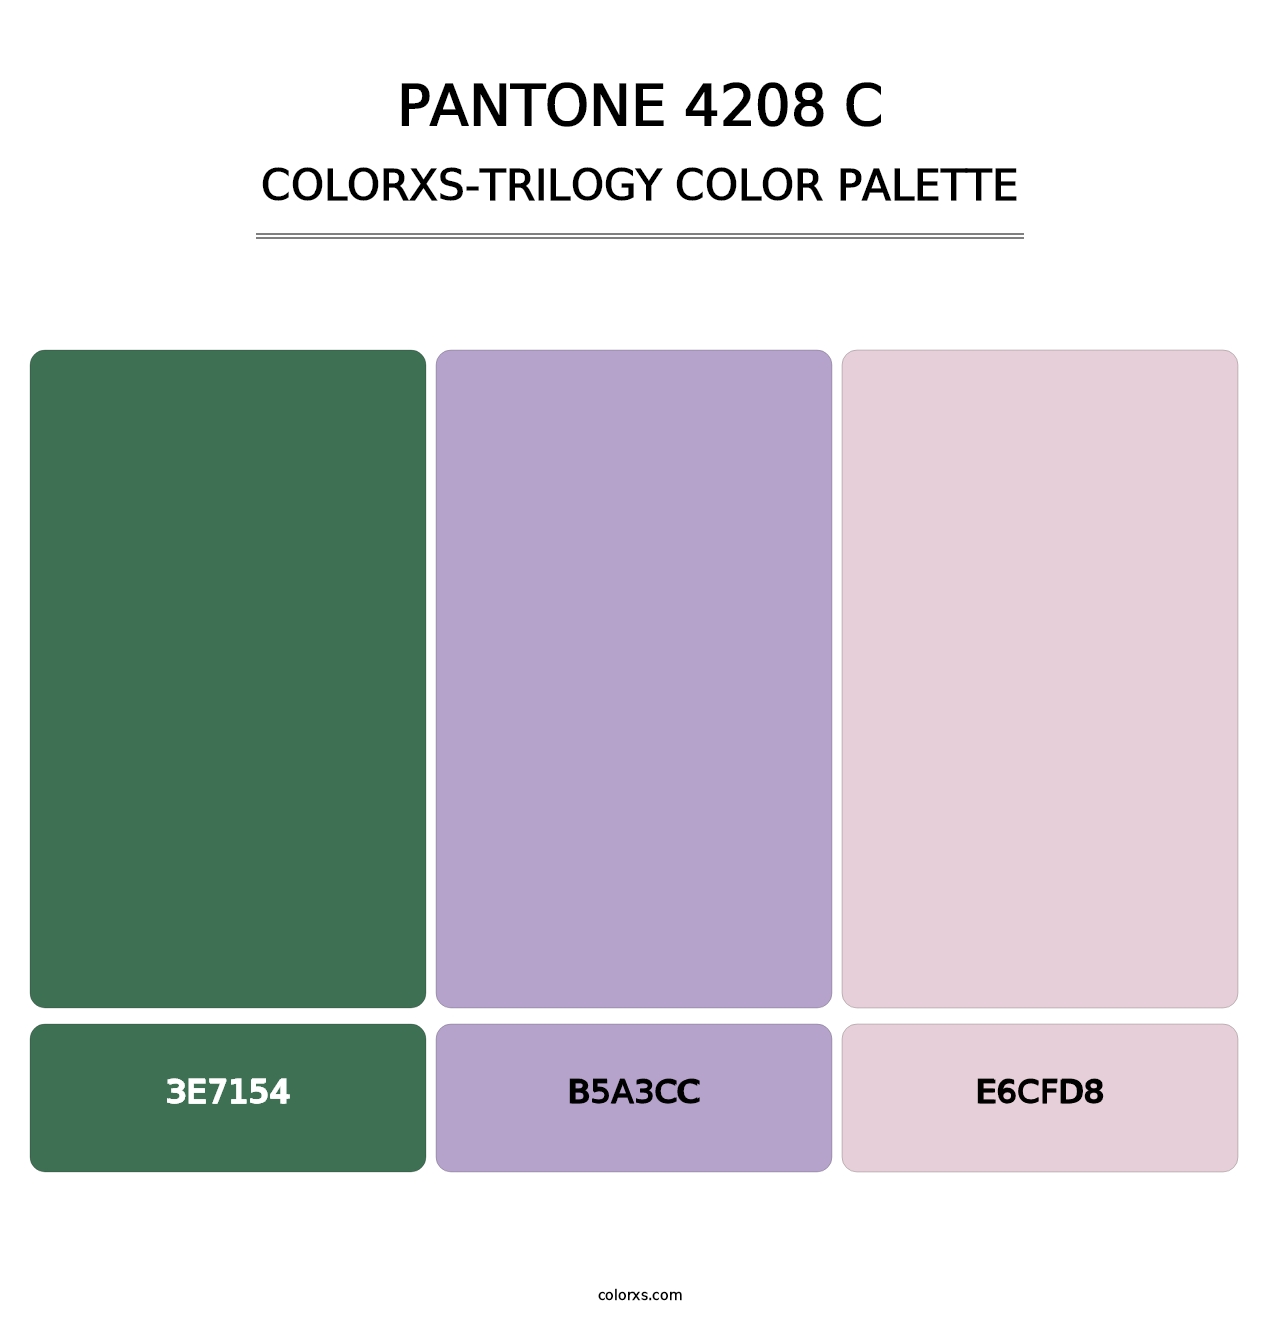 PANTONE 4208 C - Colorxs Trilogy Palette